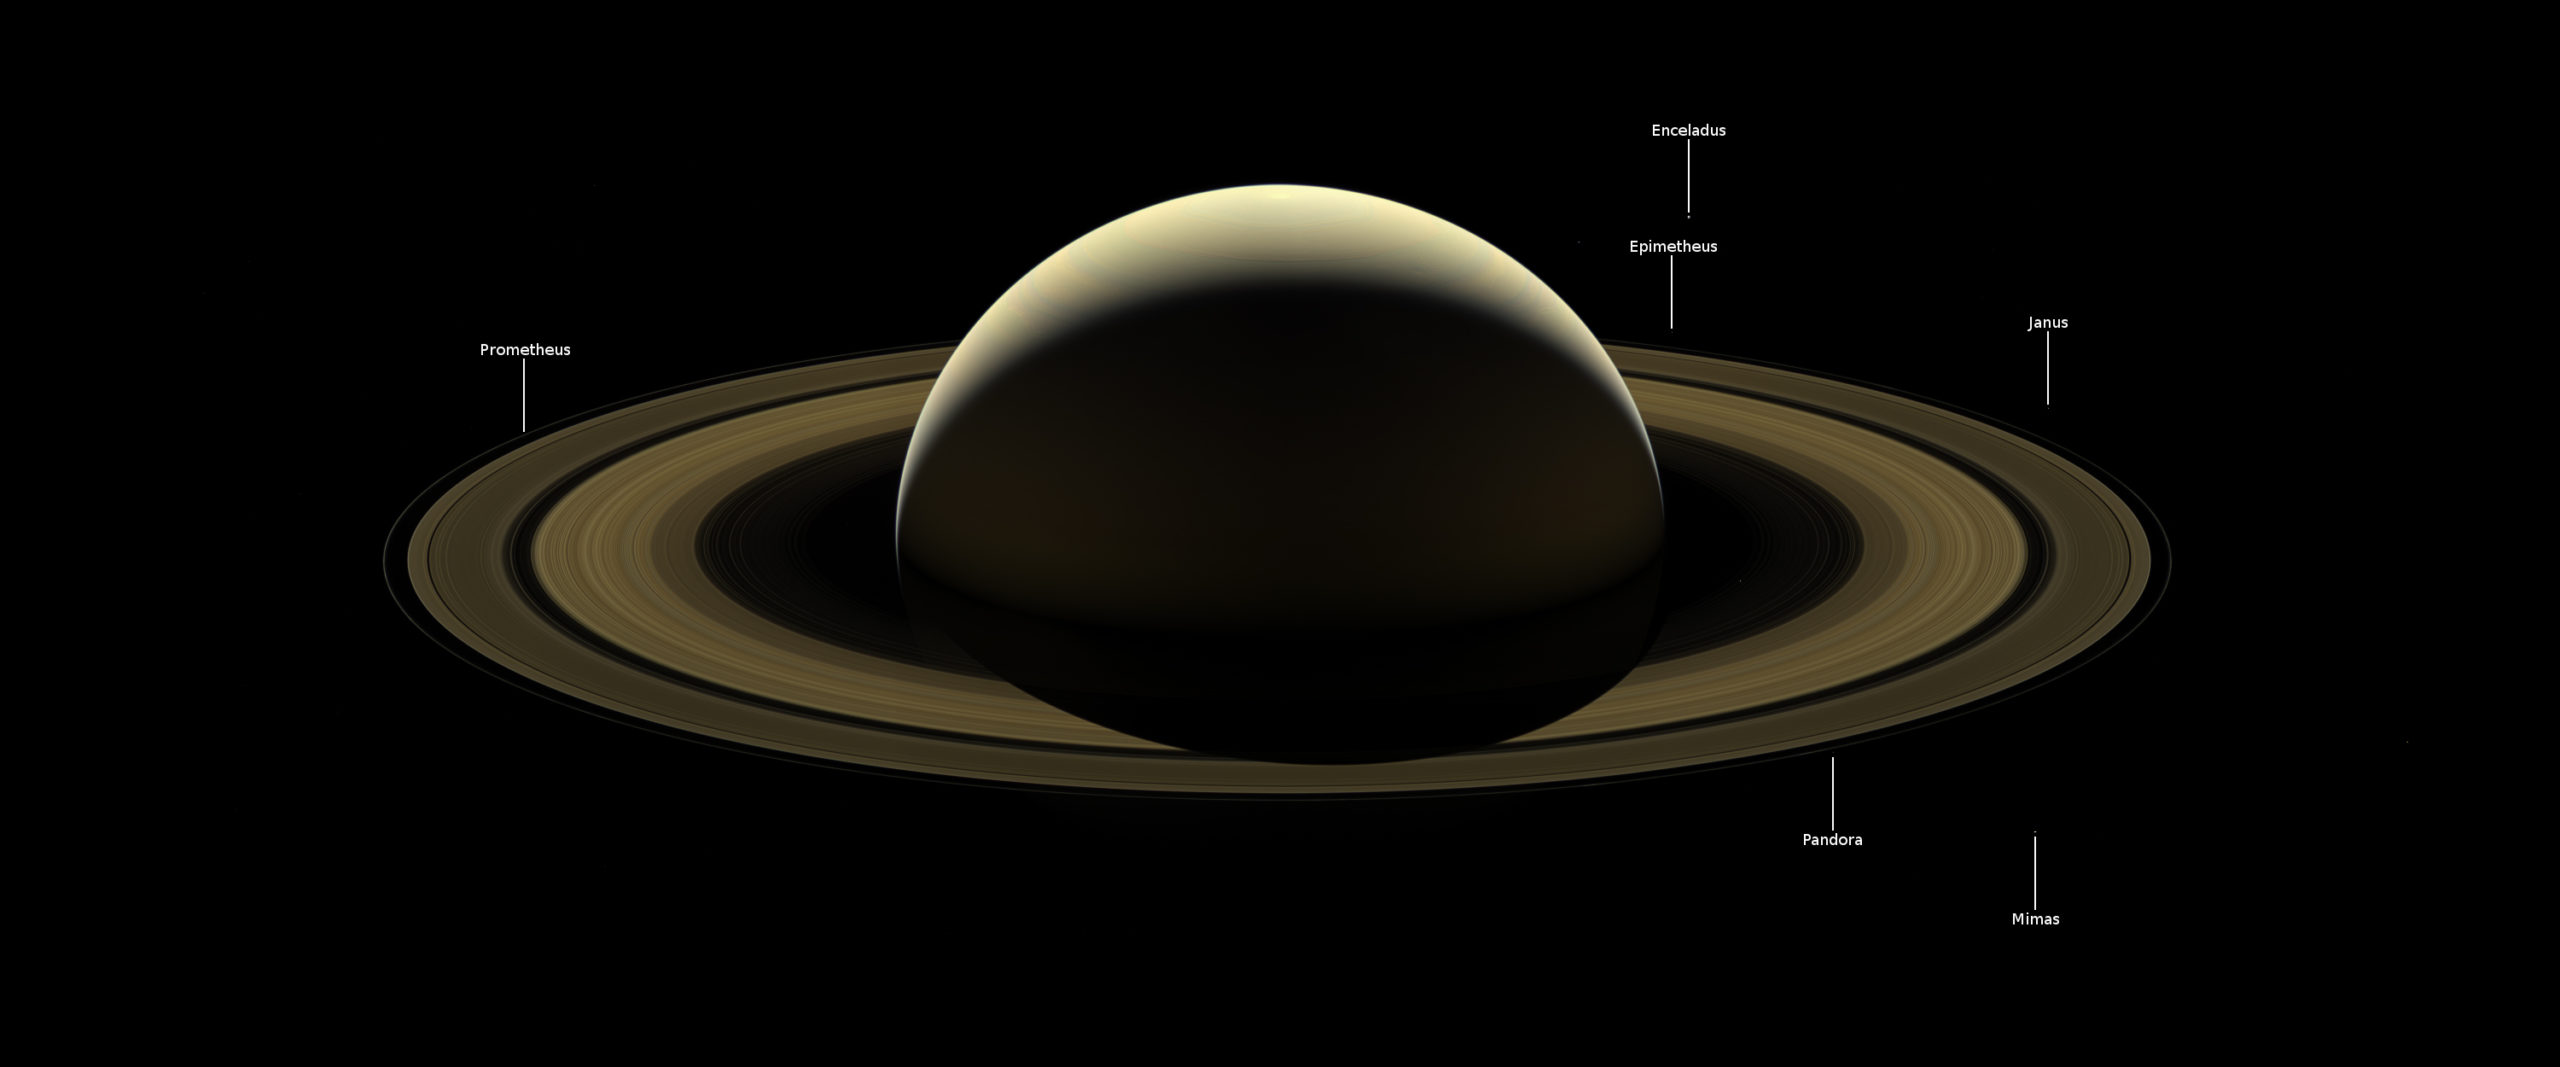 Cassini Swan Song Image Of Saturn Left Me Speechless